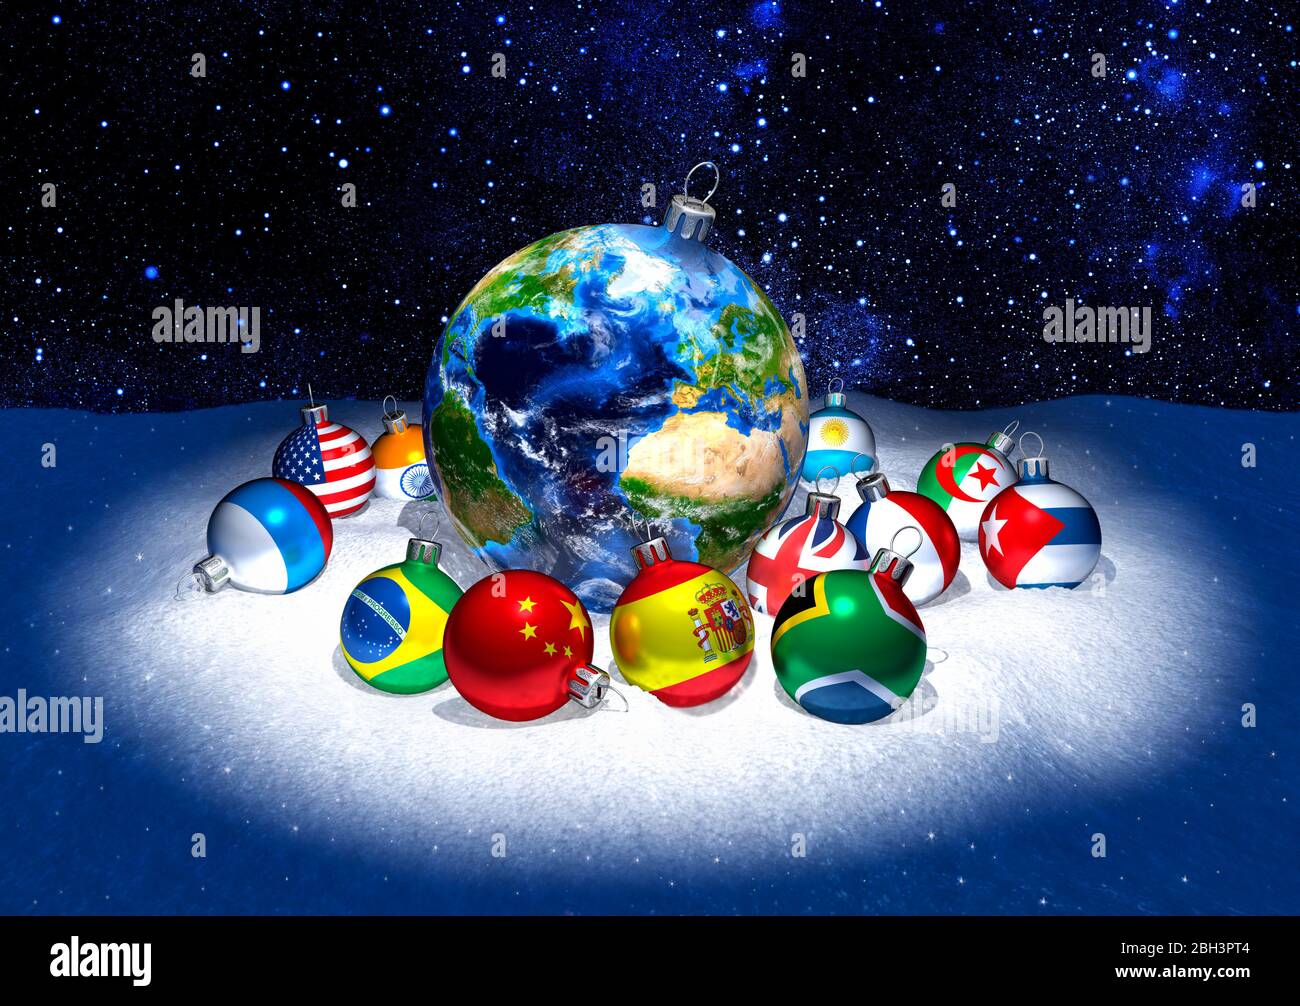 Bolas de Navidad. Planeta tierra rodeado de decoraciones más pequeñas mostrando banderas si el mundo. Nieve. Fondo de estrella. Celebración internacional. Foto de stock